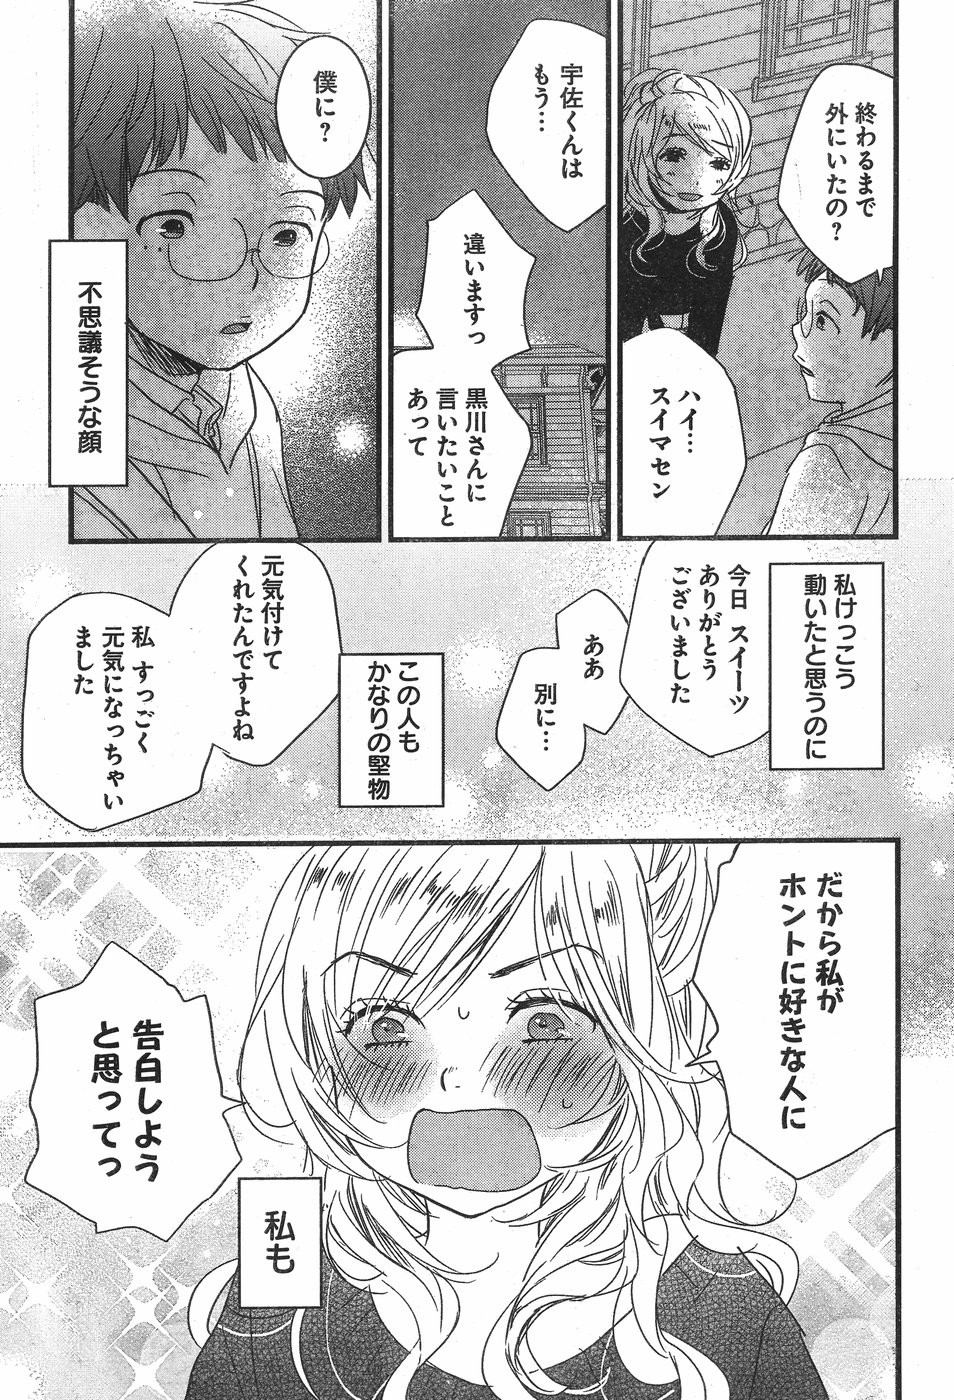 Bokura wa Minna Kawaisou - Chapter 84 - Page 23